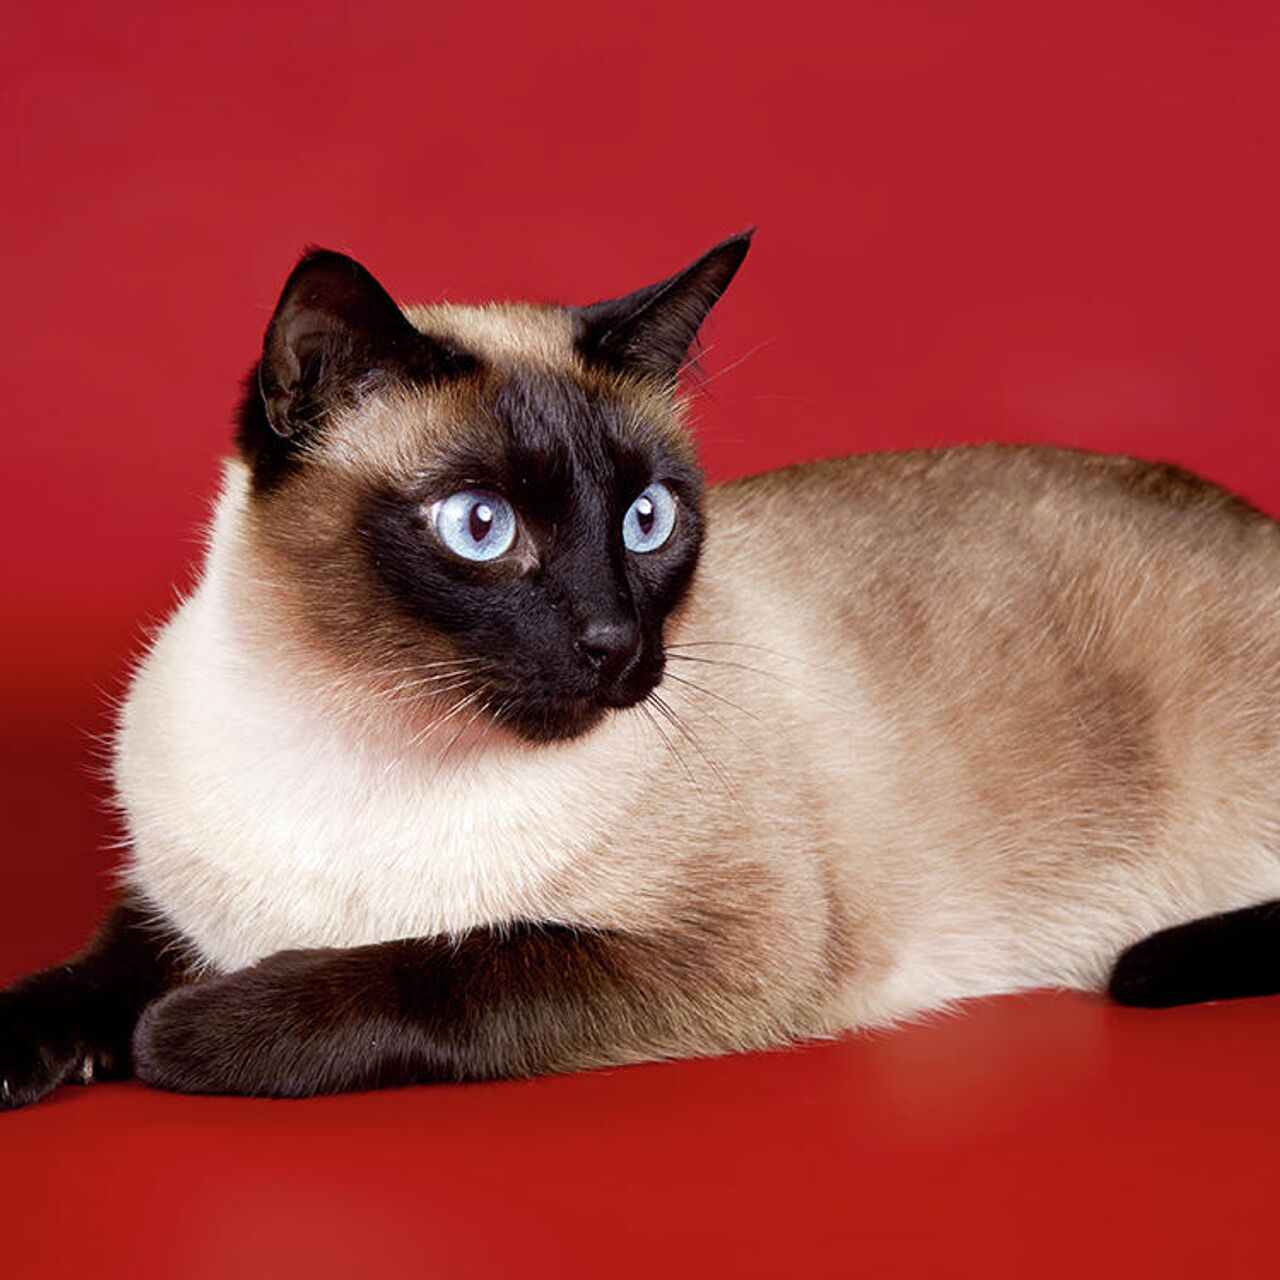 Бурманская кошка: описание и характер породы европейская бурма